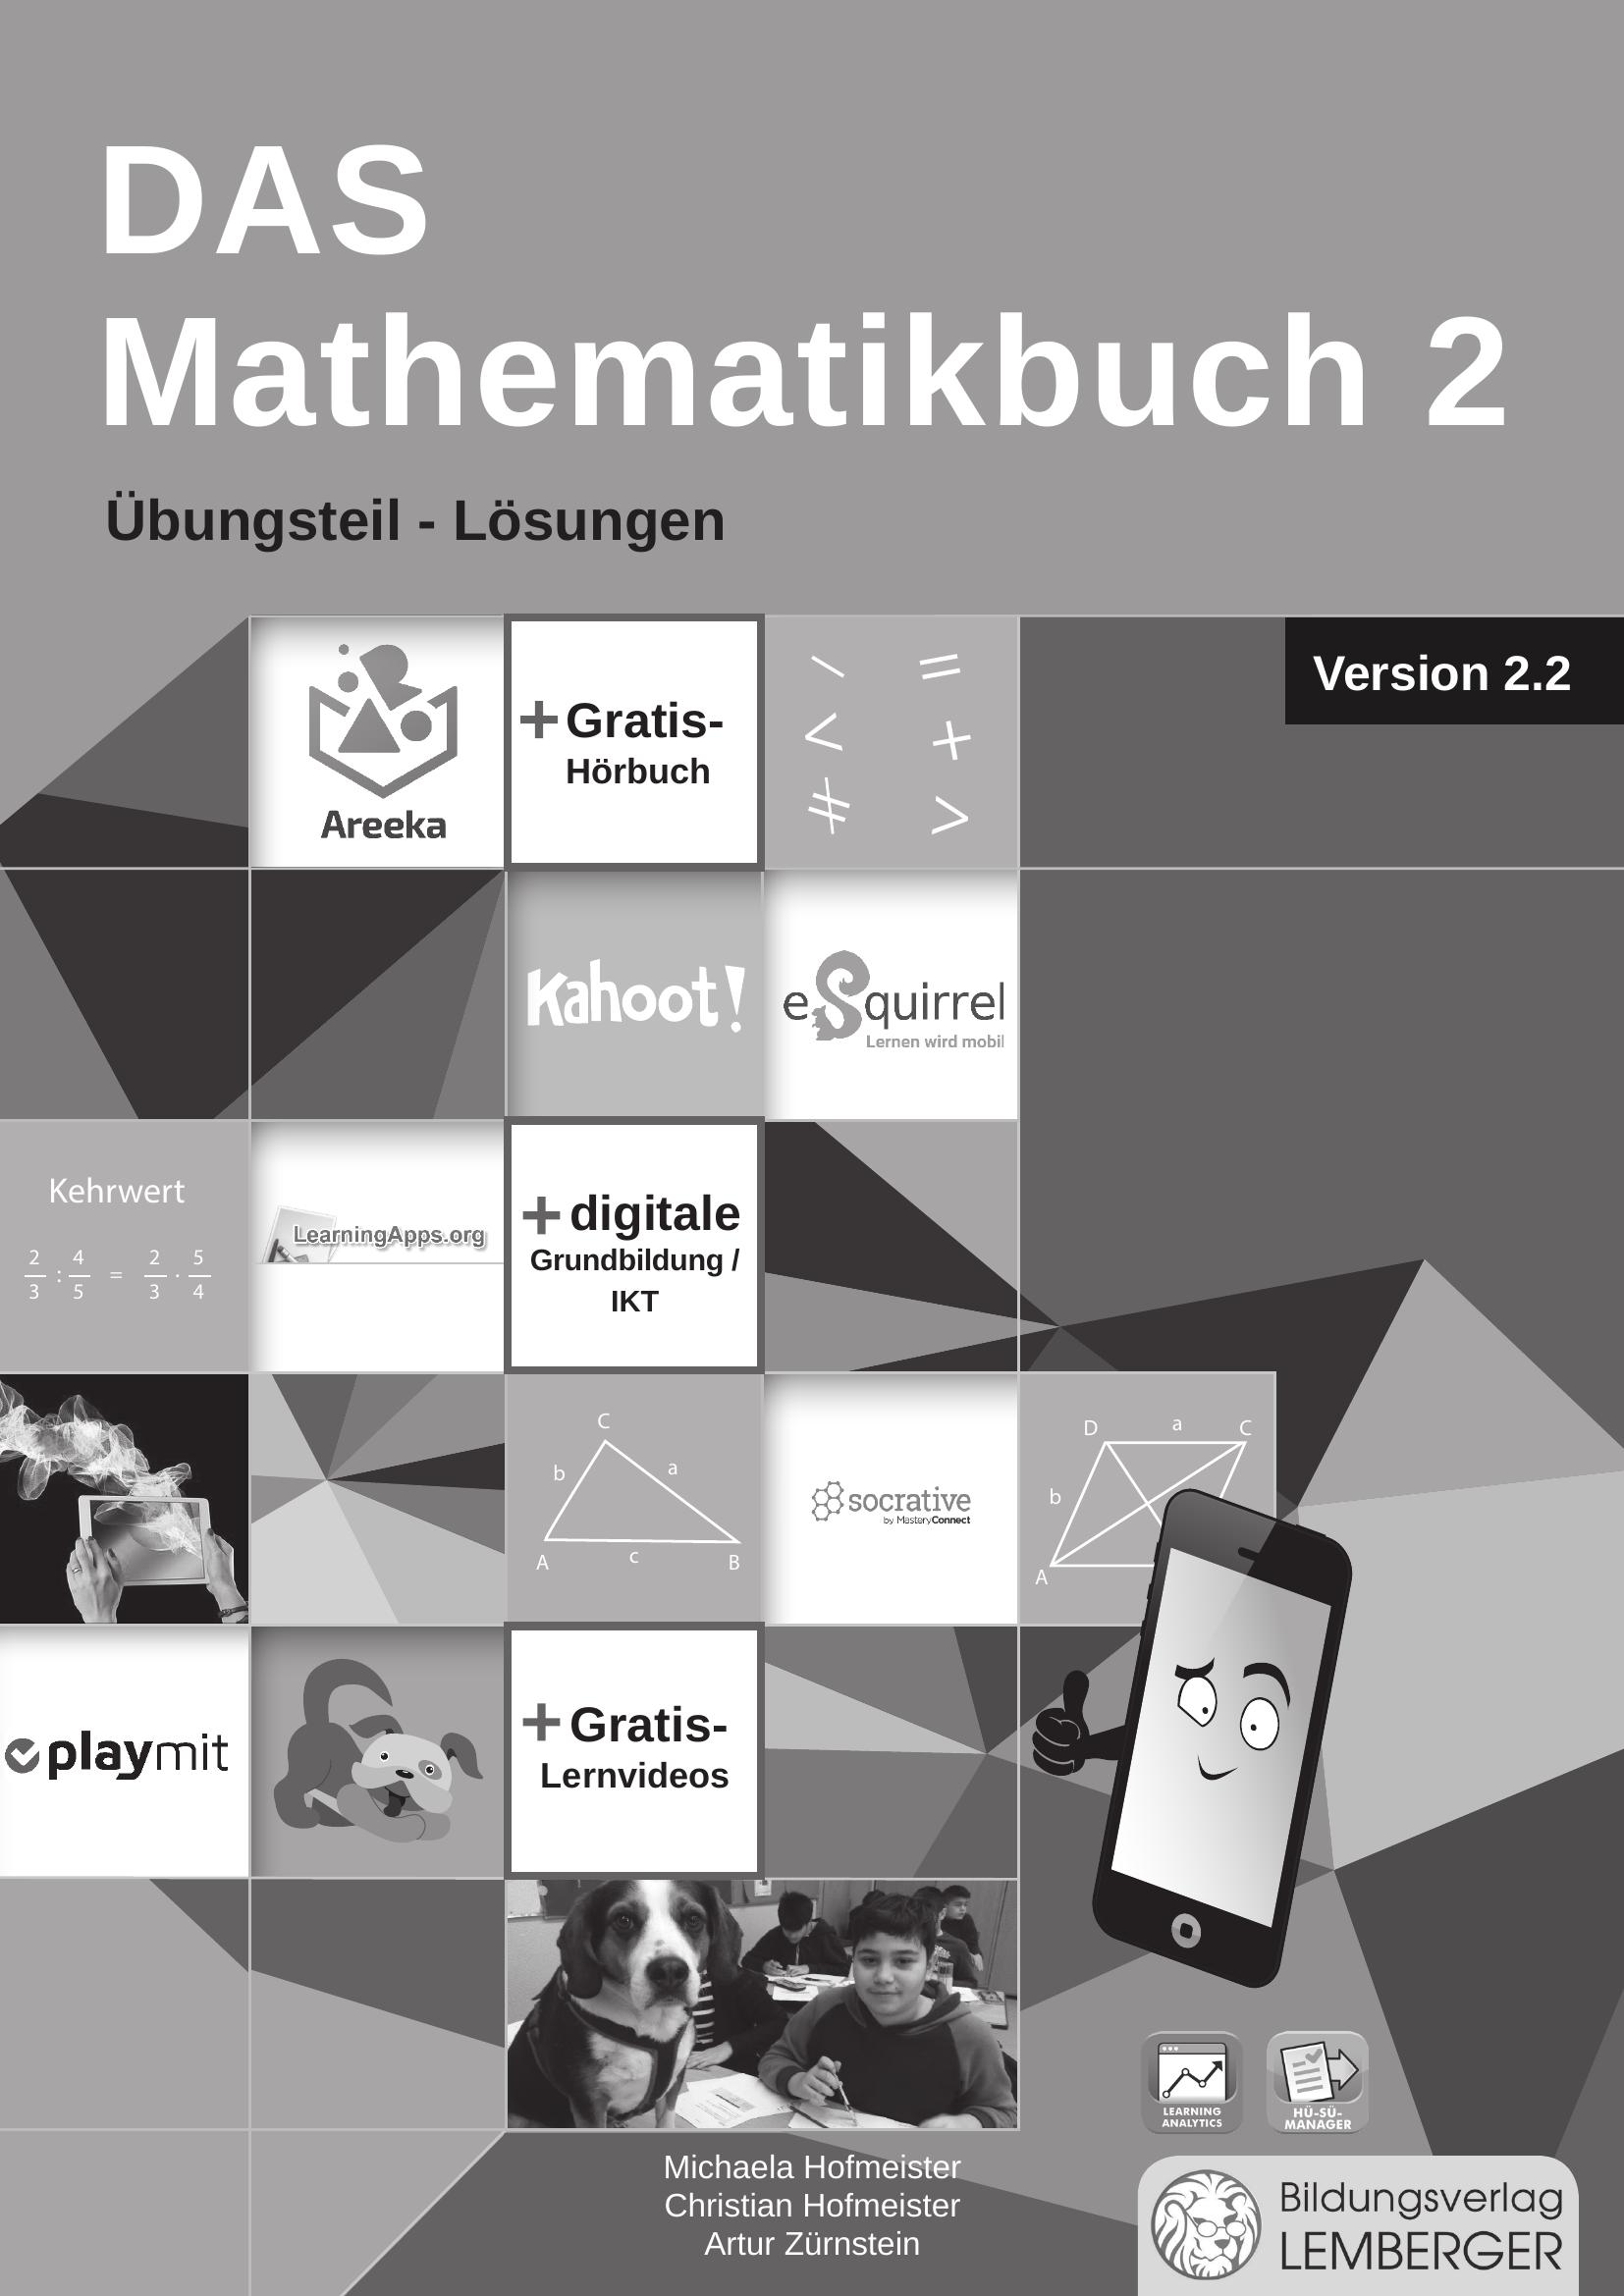 DAS Mathematikbuch 2 - Übungsteil IKT_Version 2.2 - Lösungen